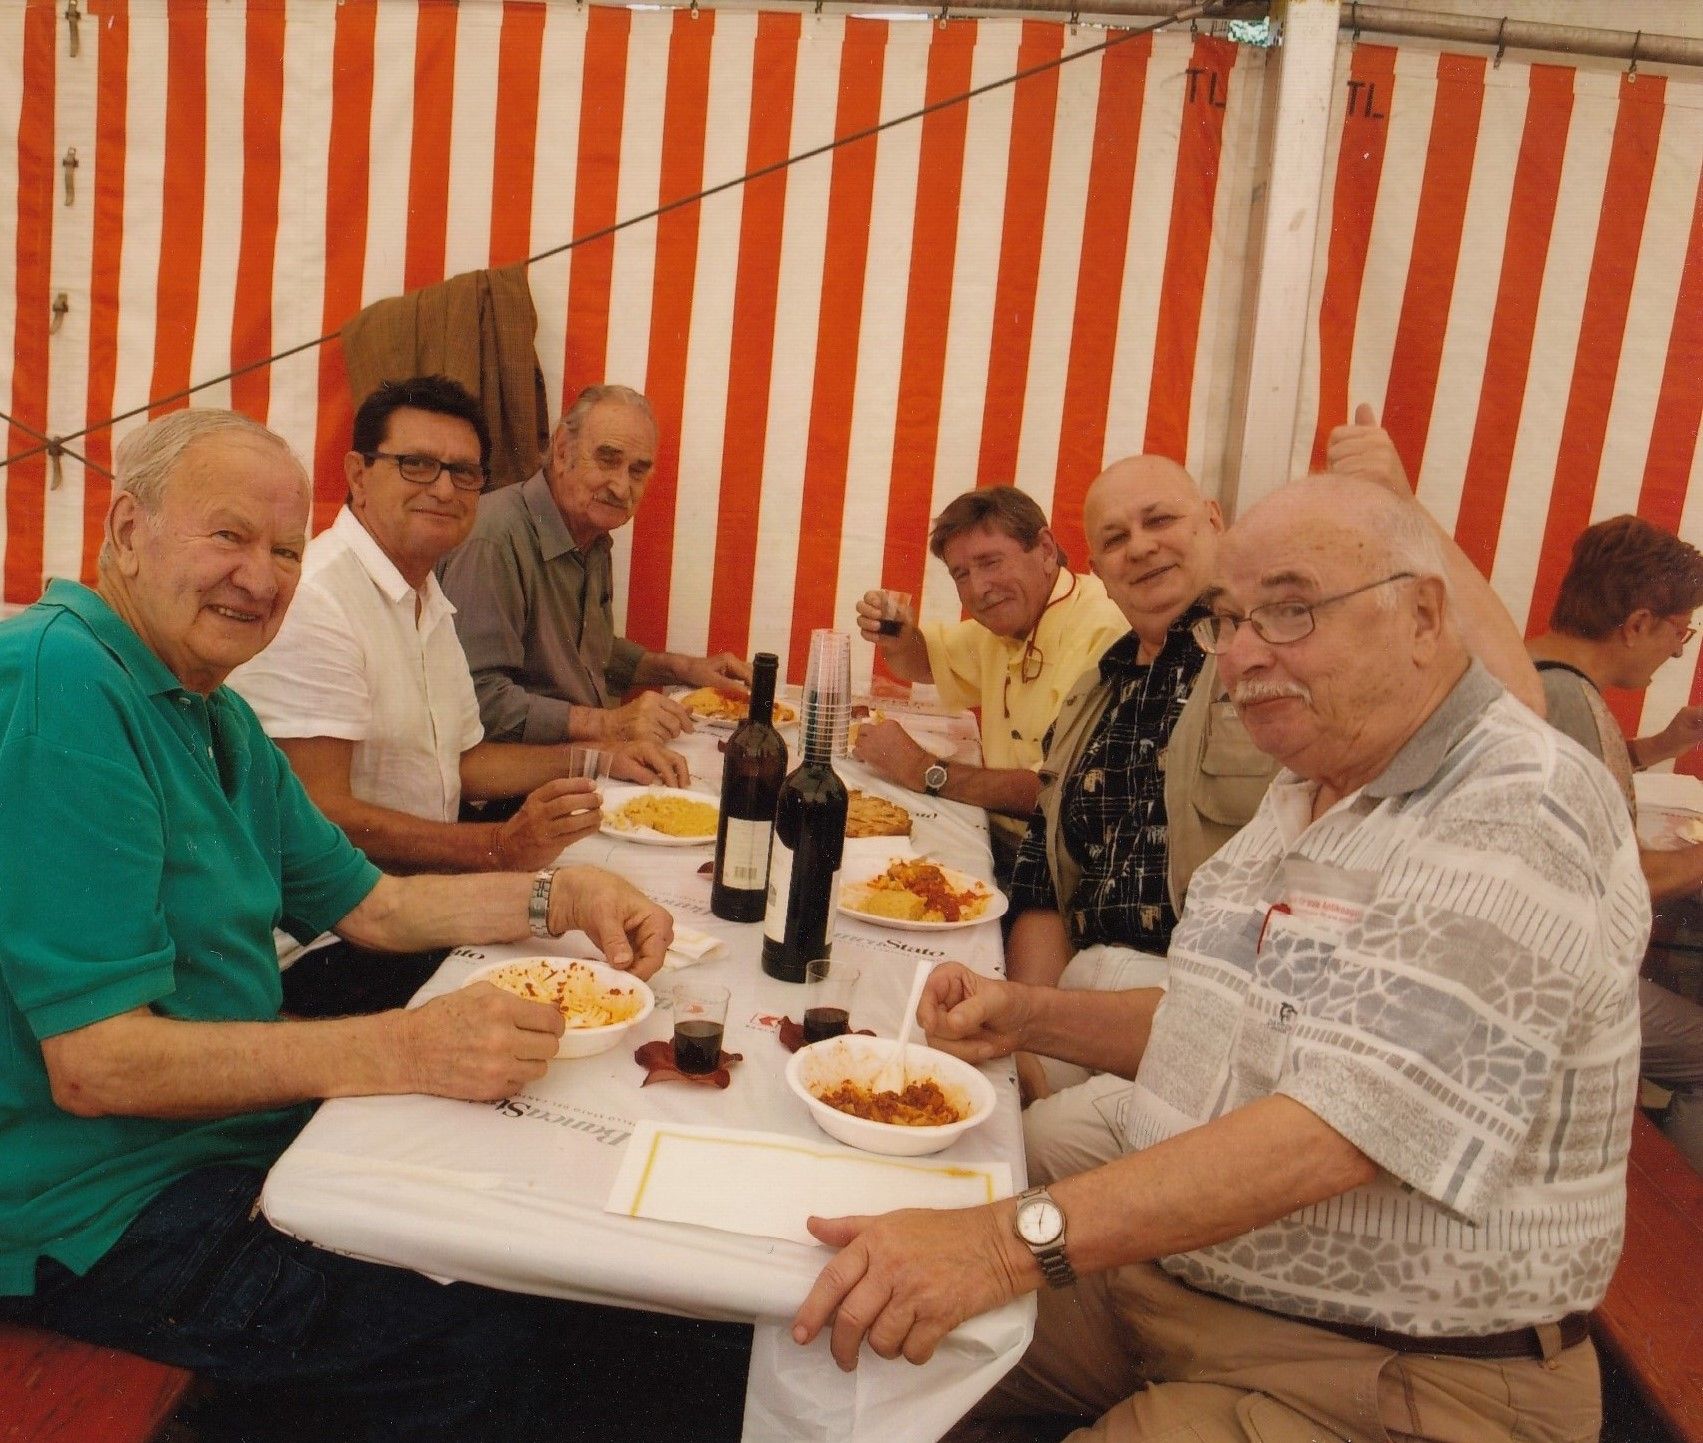 Luciano Gatti, Luciano Carazzetti, Emilio Rissone, JeanMarc Bühler, Adriano Crivelli, Rudi Walter, 13.09.2008